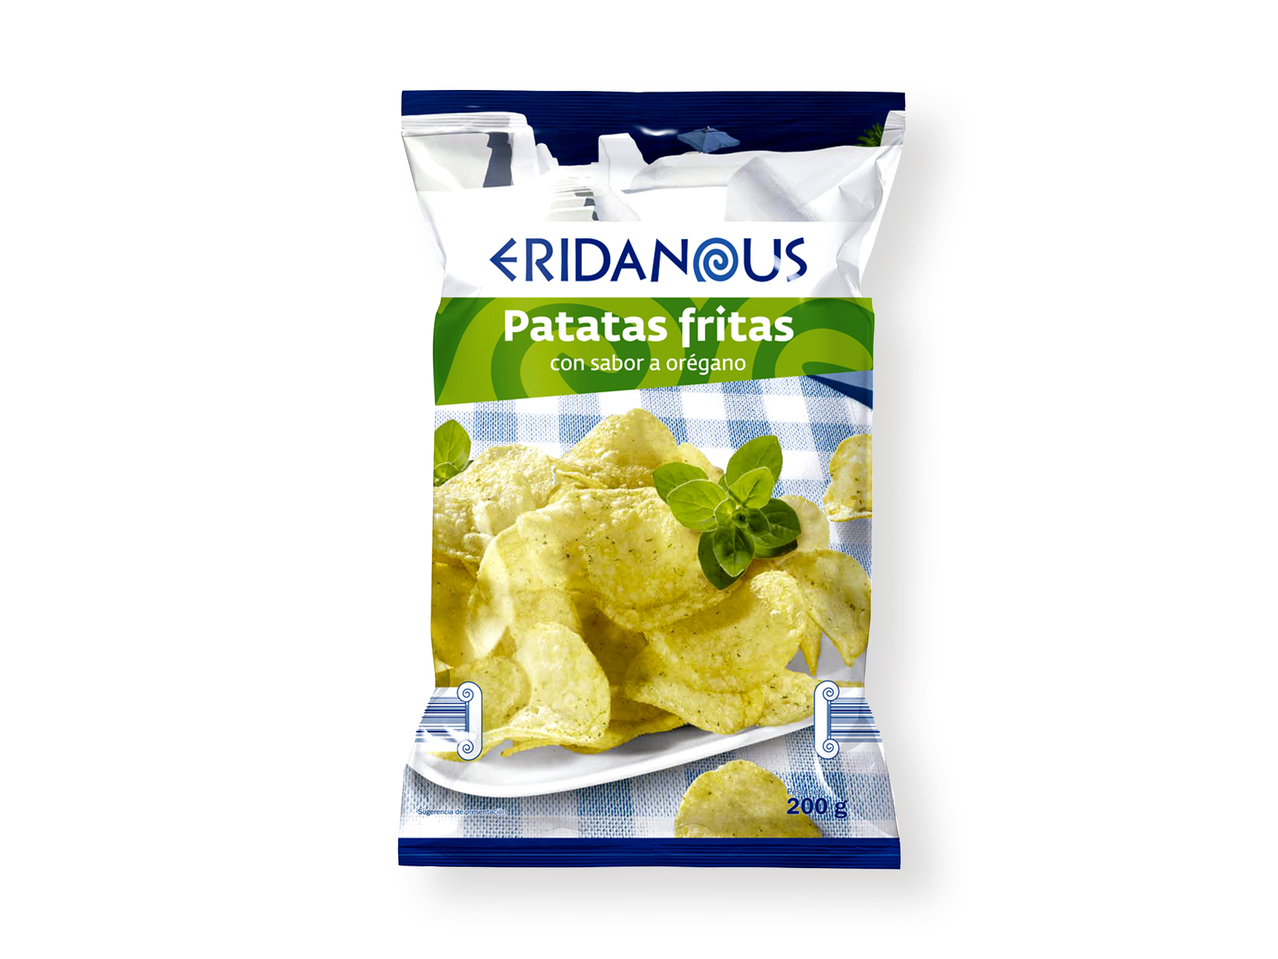 'Eridanous(R)' Patatas chips